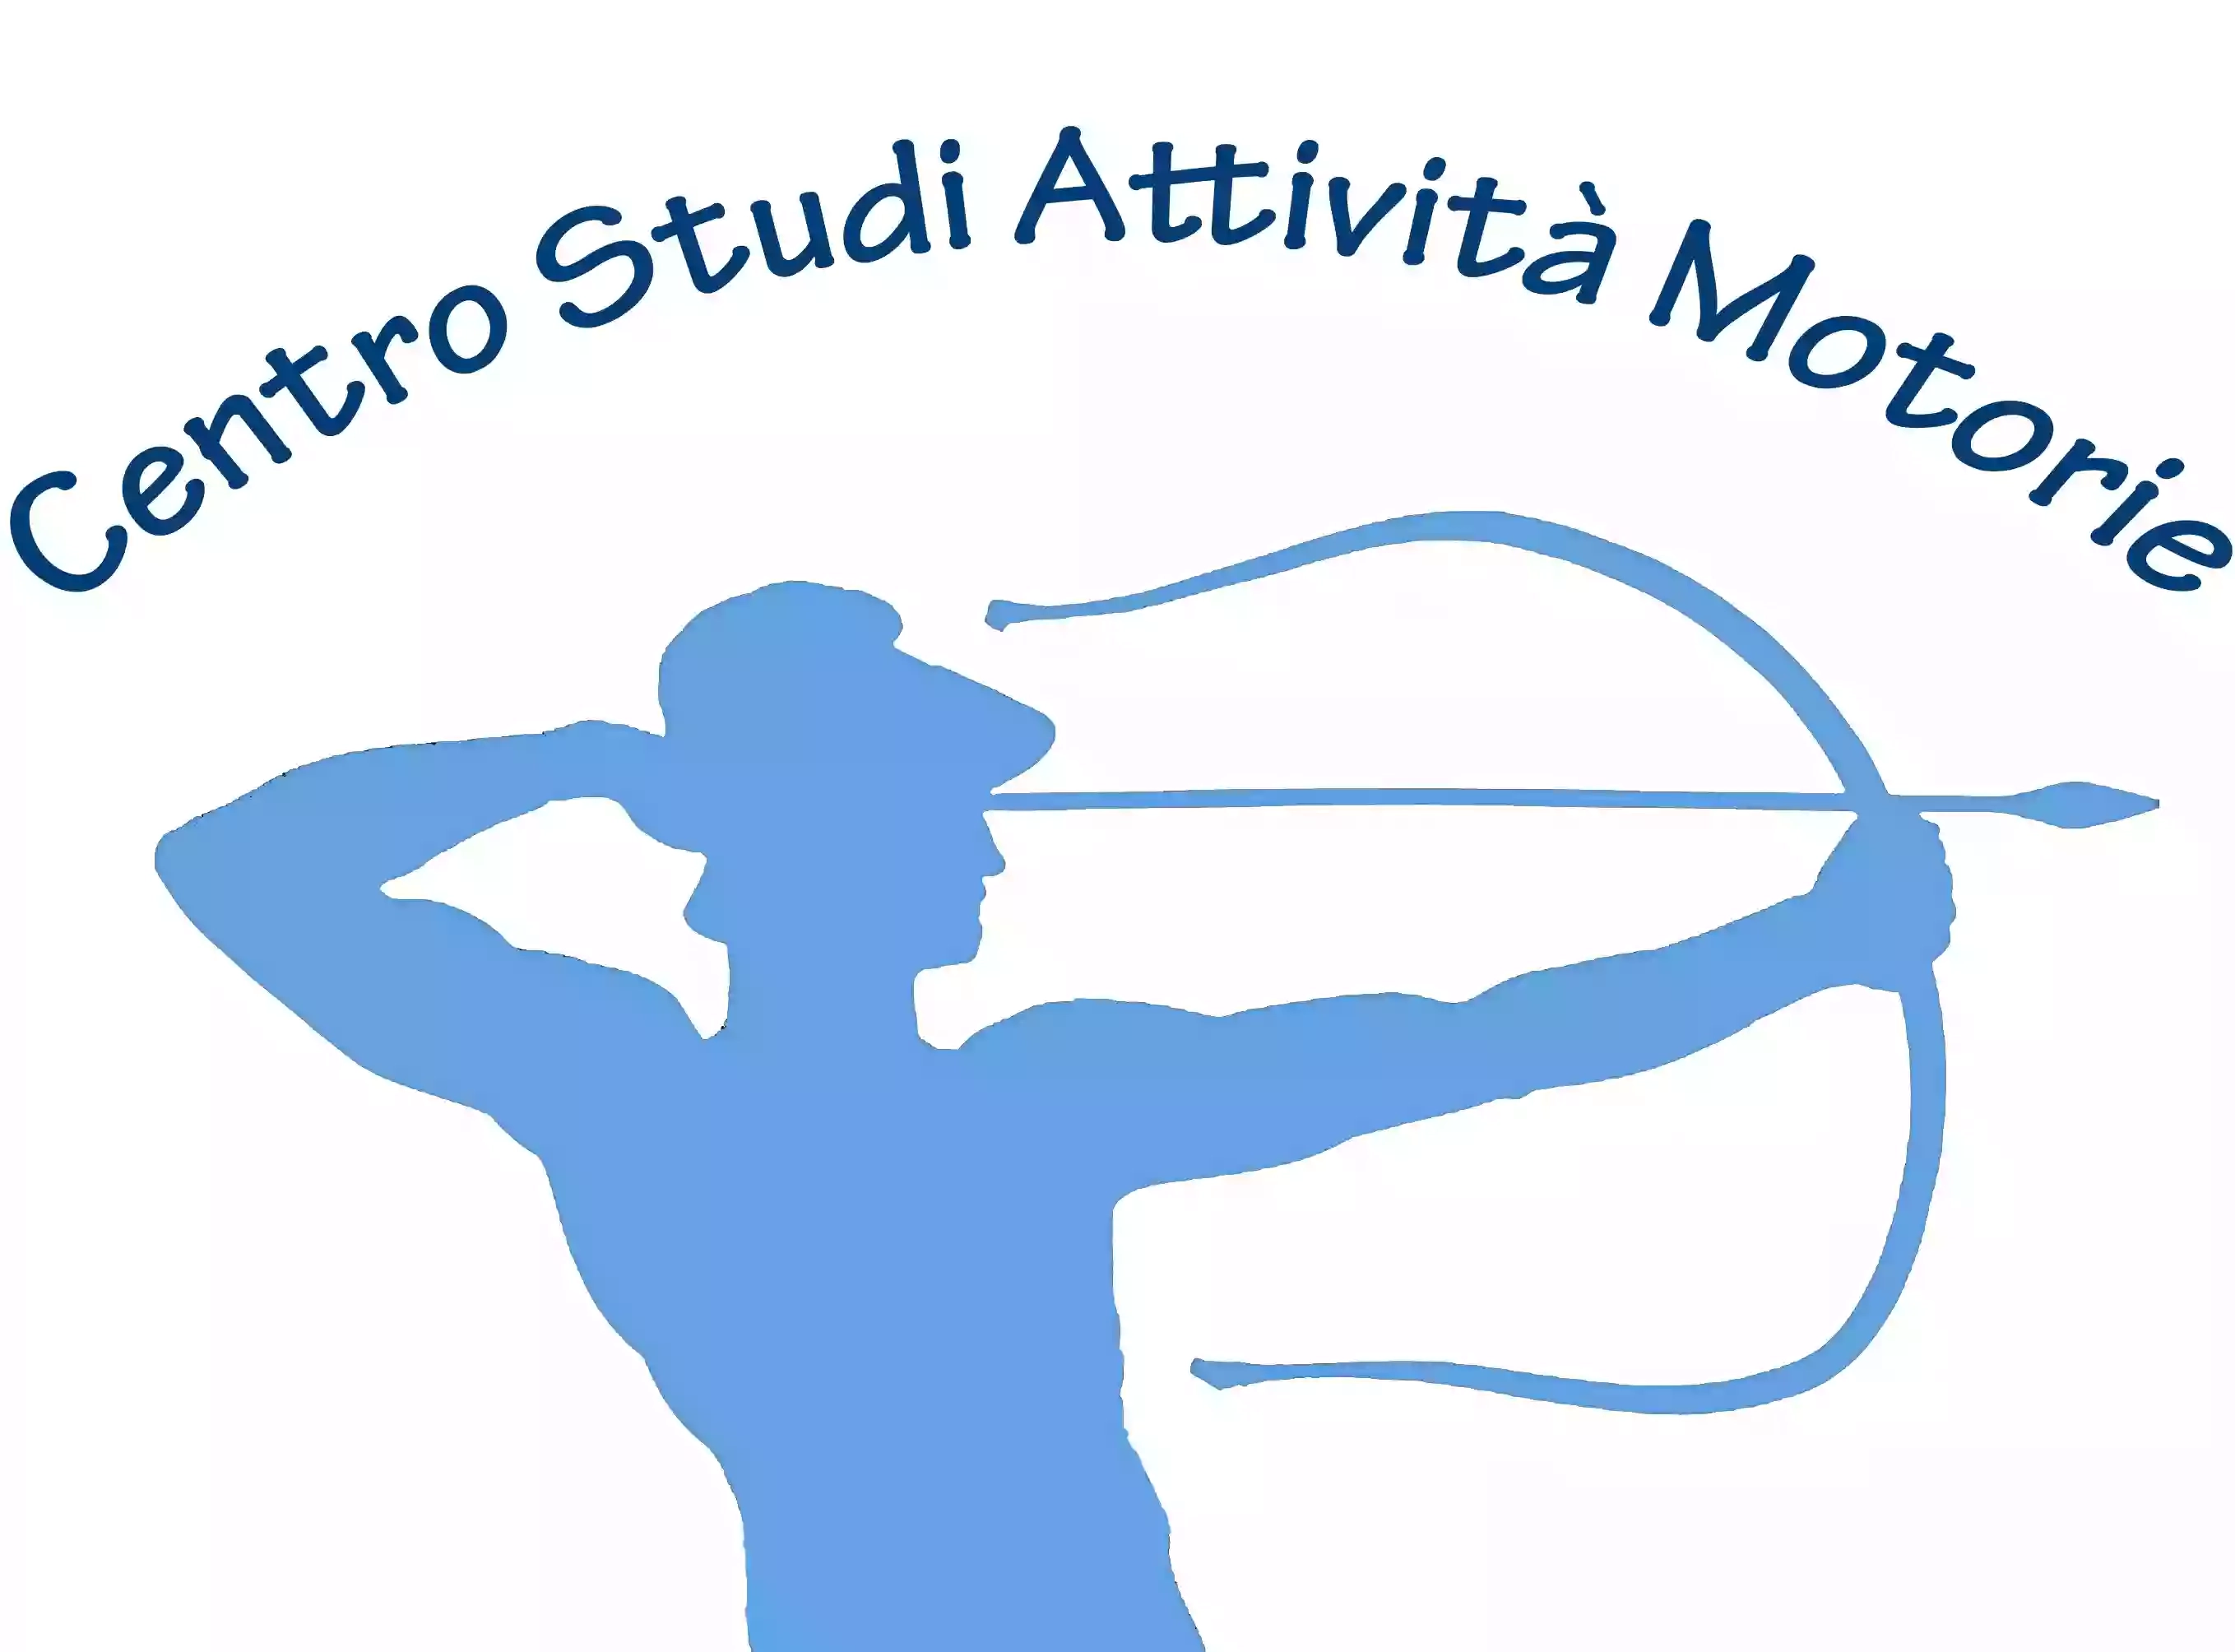 Centro Studi Attivita' Motorie Di Rossi Stefano